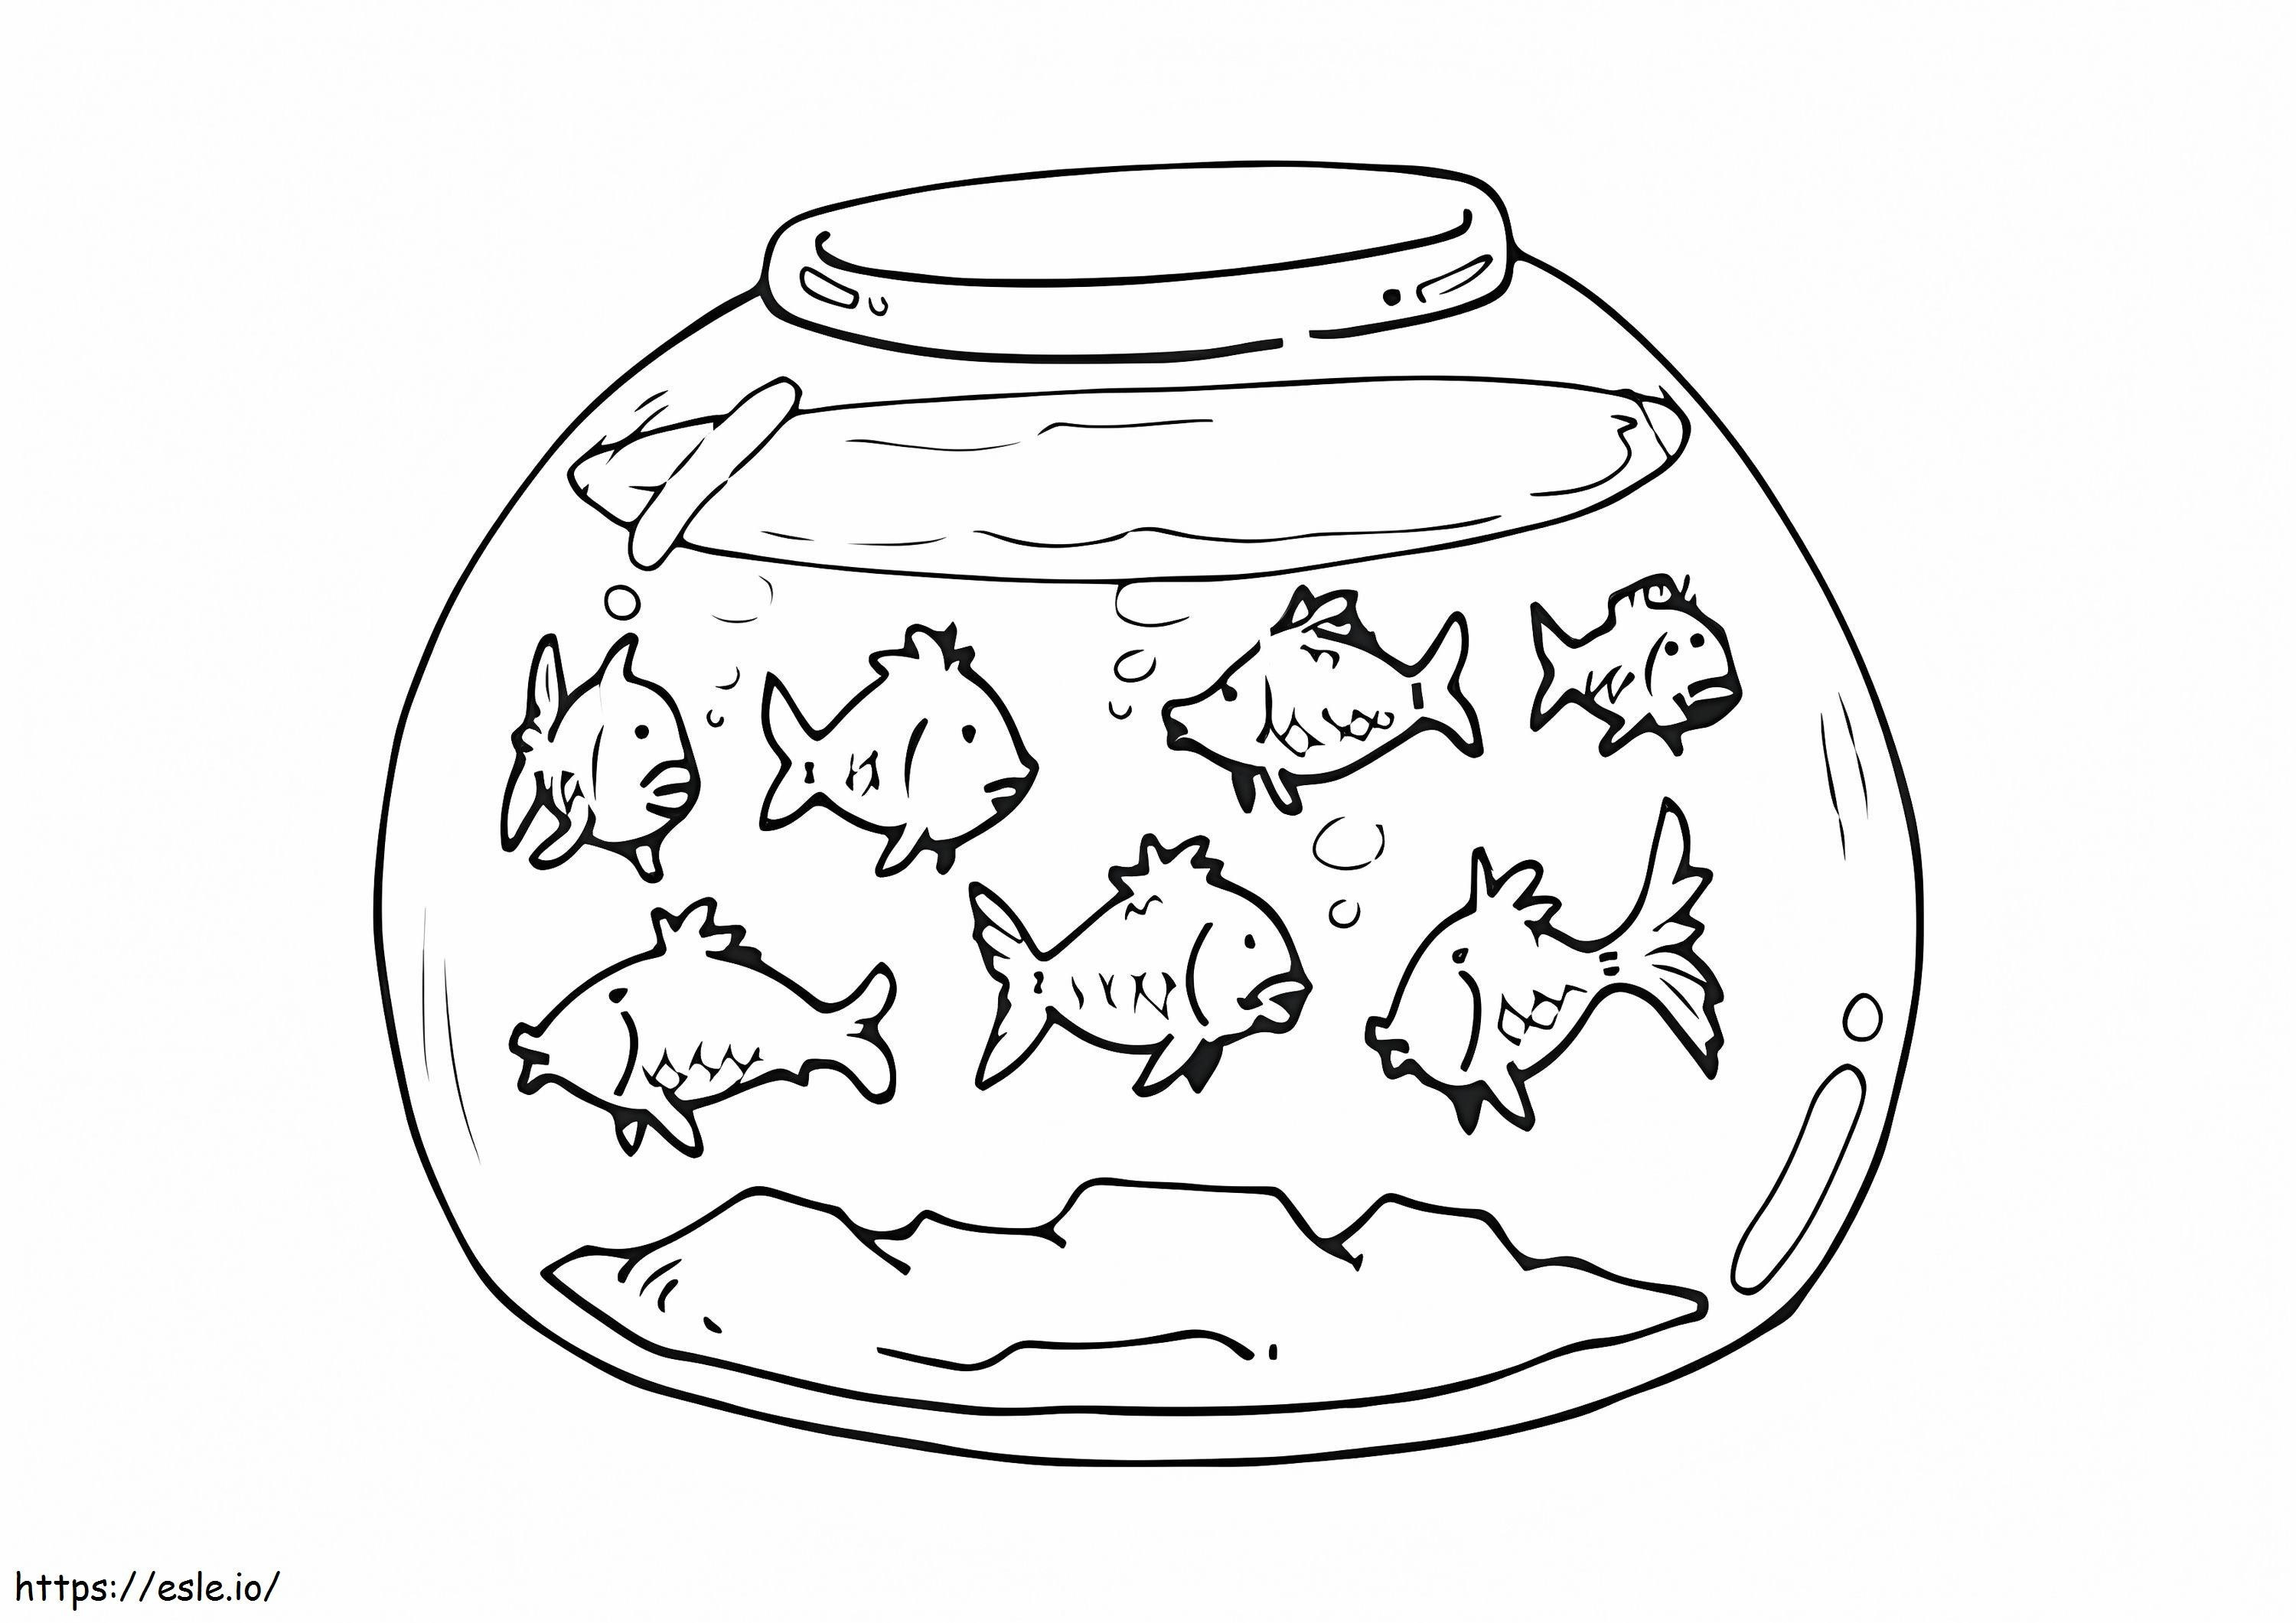 Fischglas ausmalbilder